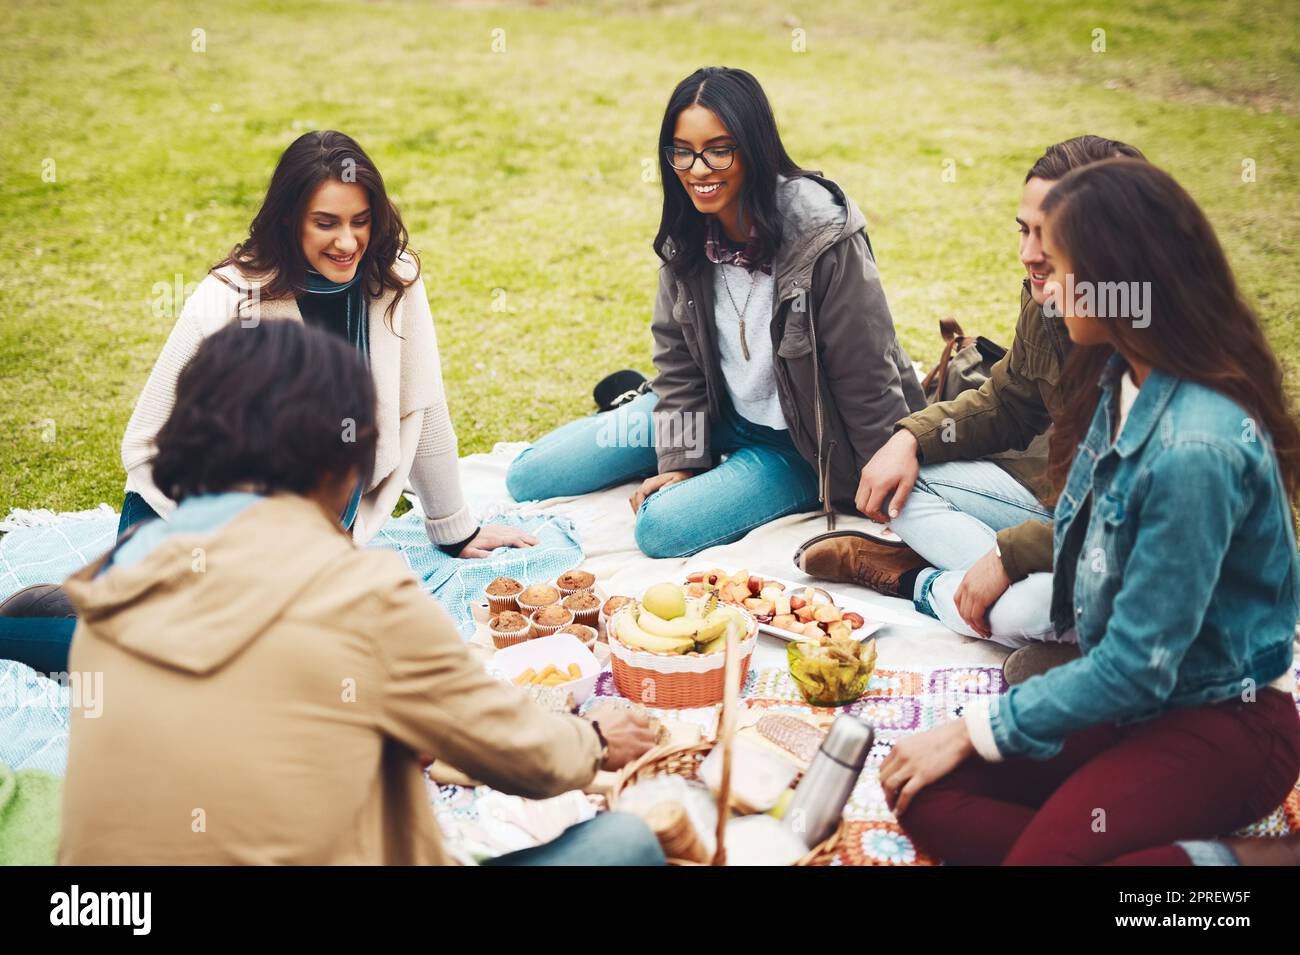 Chi ha bisogno di una ricarica. Un gruppo di giovani amici allegri che hanno un picnic insieme all'esterno in un parco durante il giorno. Foto Stock